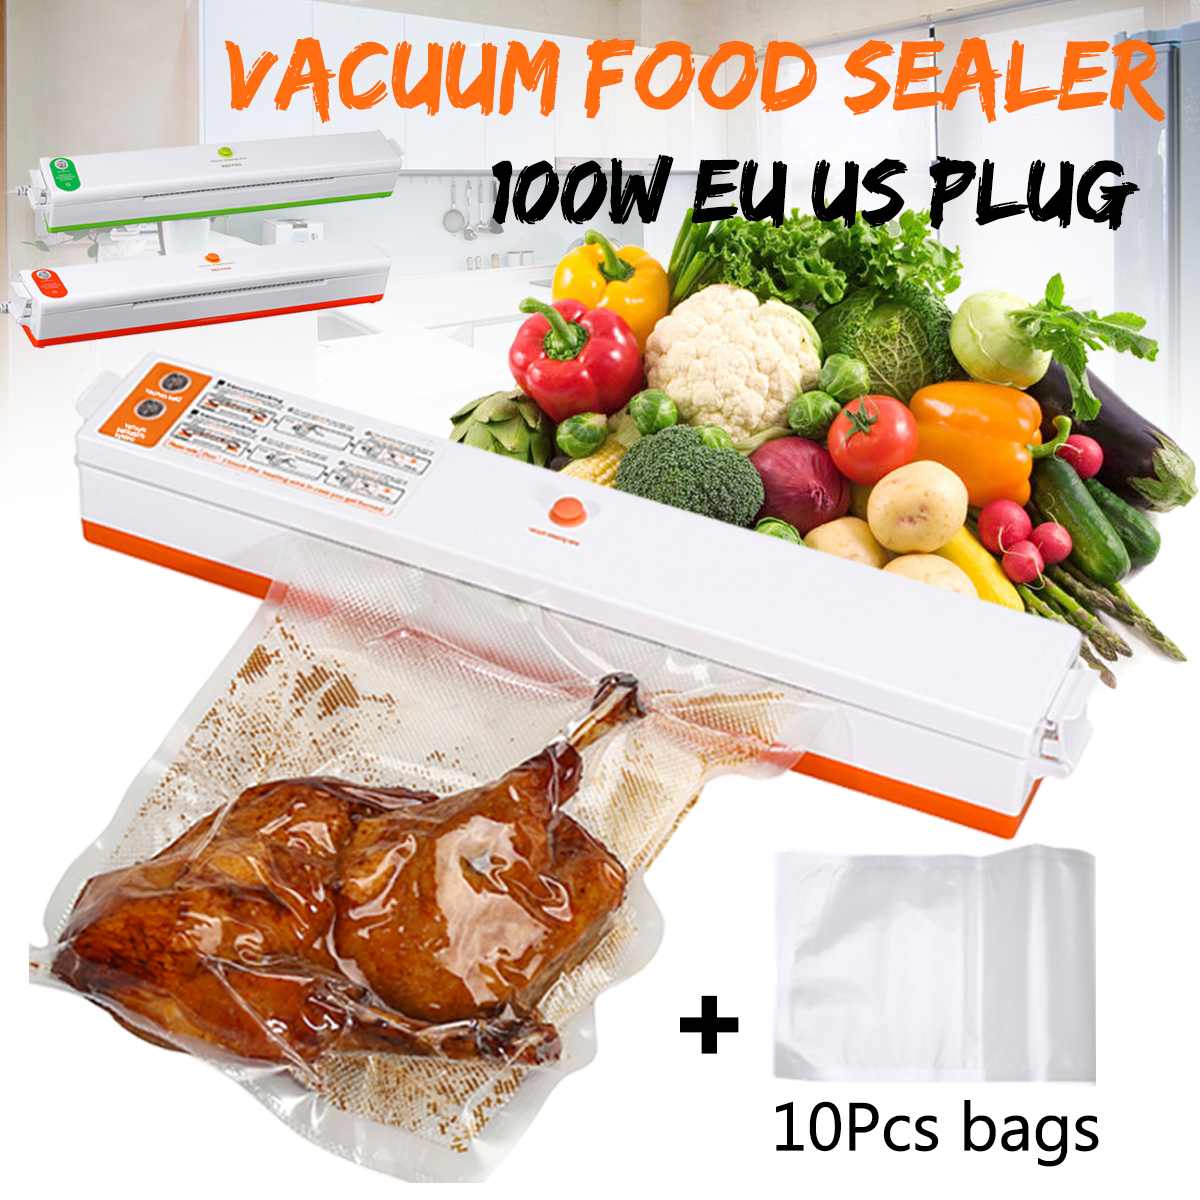 220V Vacuüm Voedsel Sealer Machine Vacuüm Sluitmachine Film Container Huishoudelijke Voedsel Sealer Saver Omvat Met 10 Vacuümverpakker